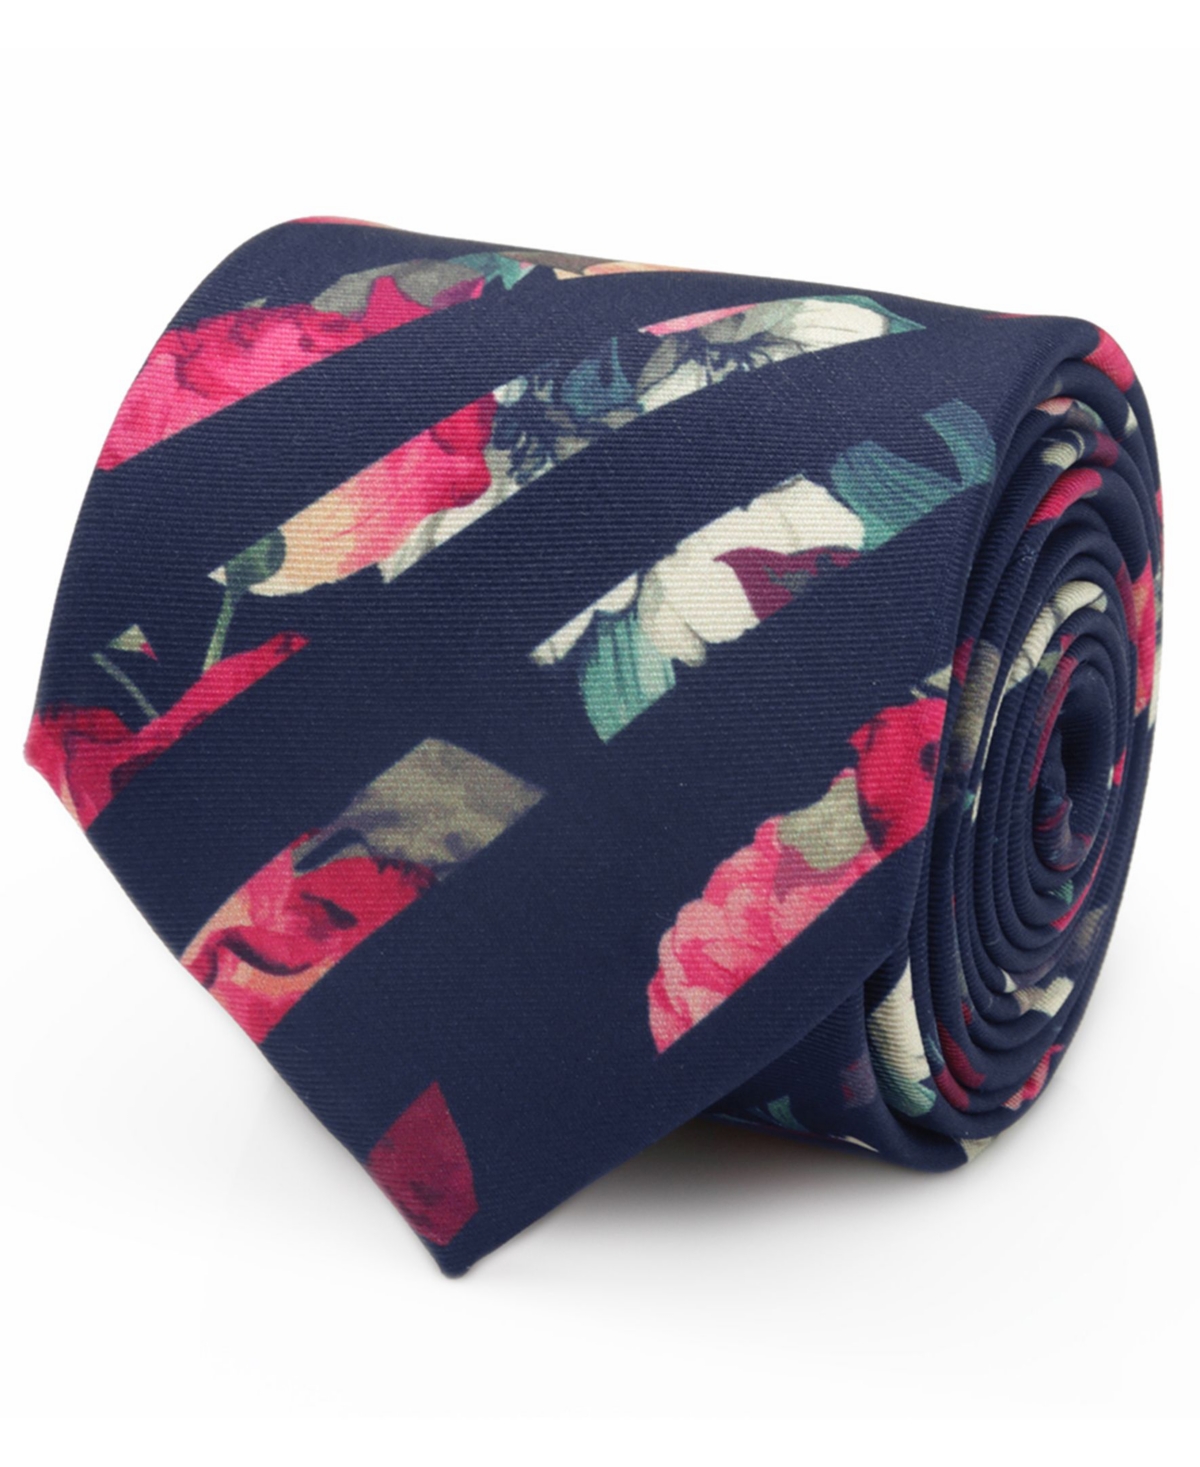 Men's Painted Floral Stripe Tie - Navy